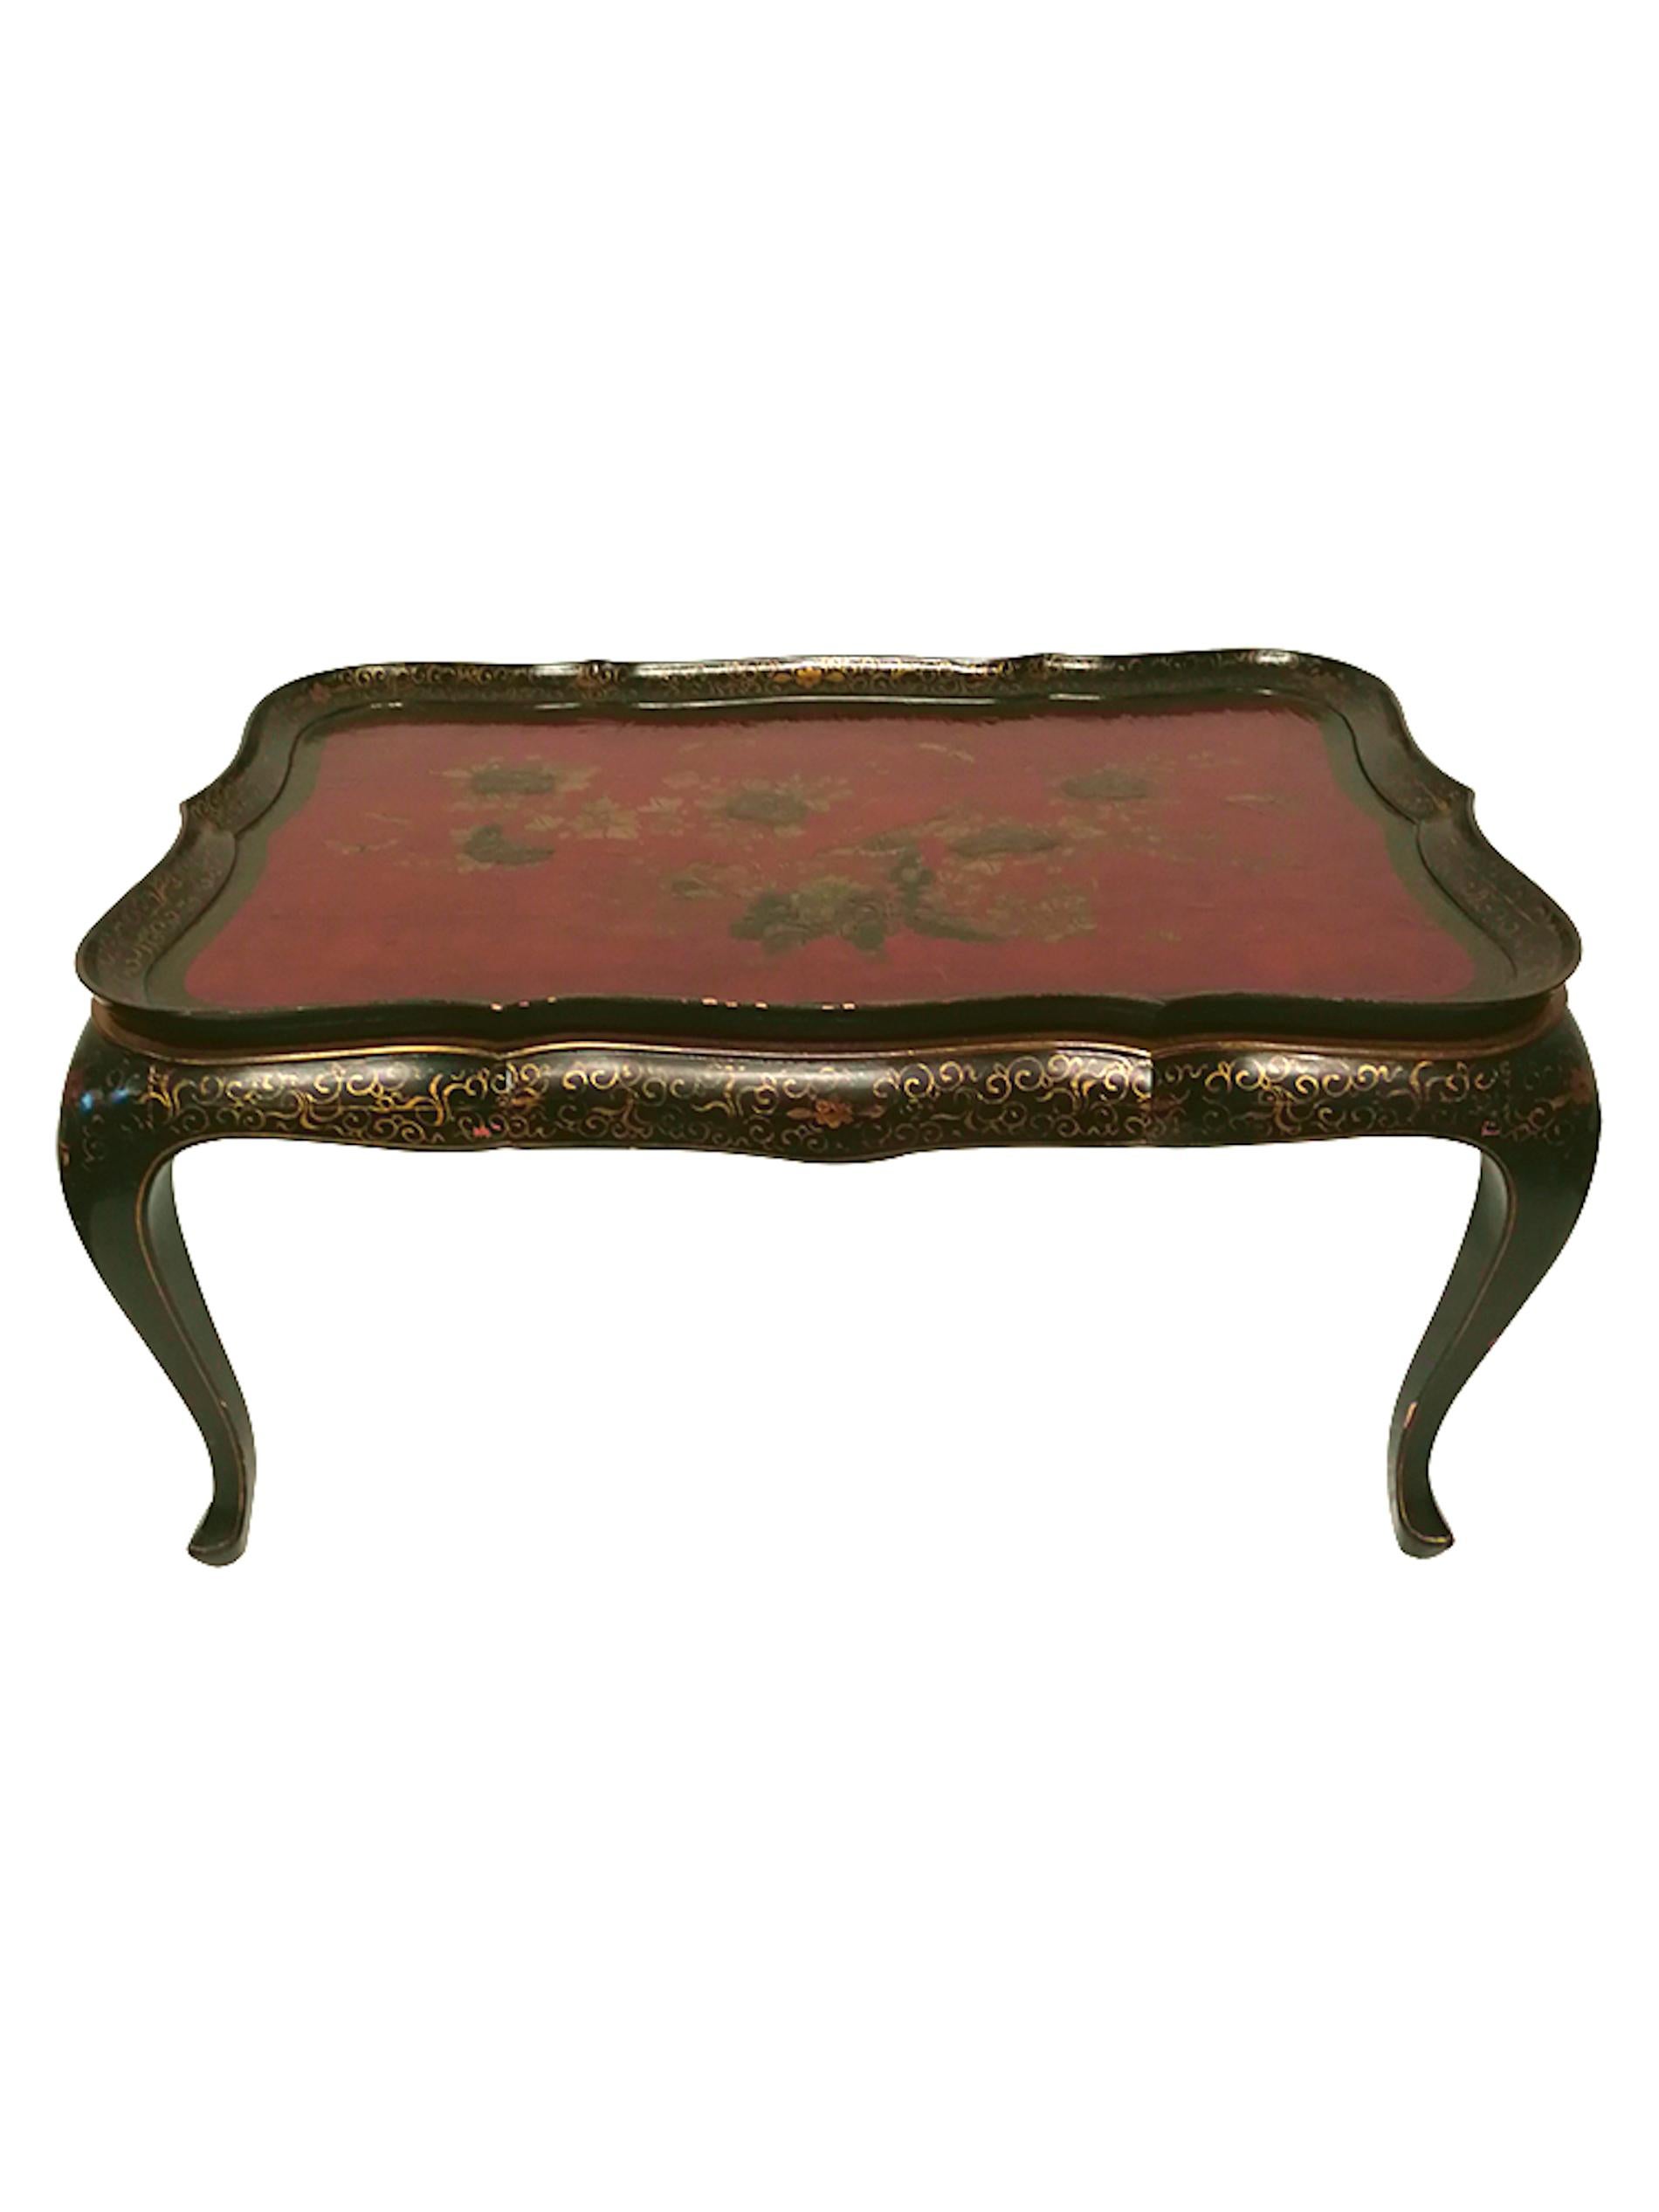 Table basse chinoise peinte à la main en bois clair du 19ème siècle, avec un plateau indépendant peint à la main avec 37 couches de laque. 
La table est laquée en noir avec une décoration florale dorée.
Le bord du plateau indépendant est laqué en